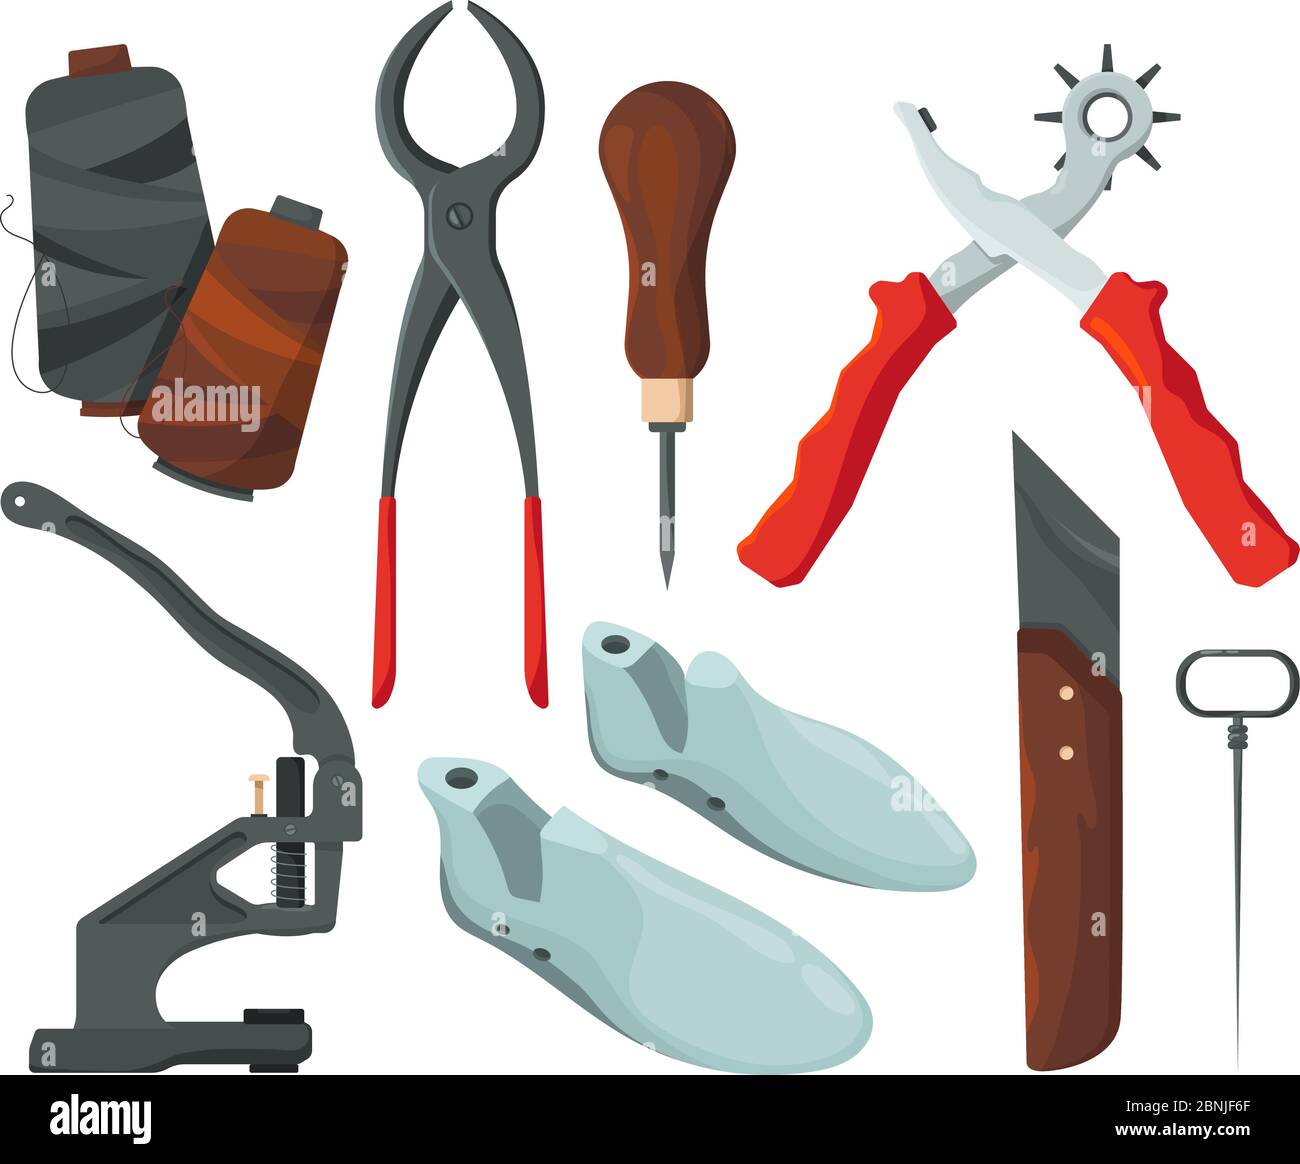 Diversi attrezzi per la riparazione del pattino. Immagini vettoriali in stile cartoon Illustrazione Vettoriale